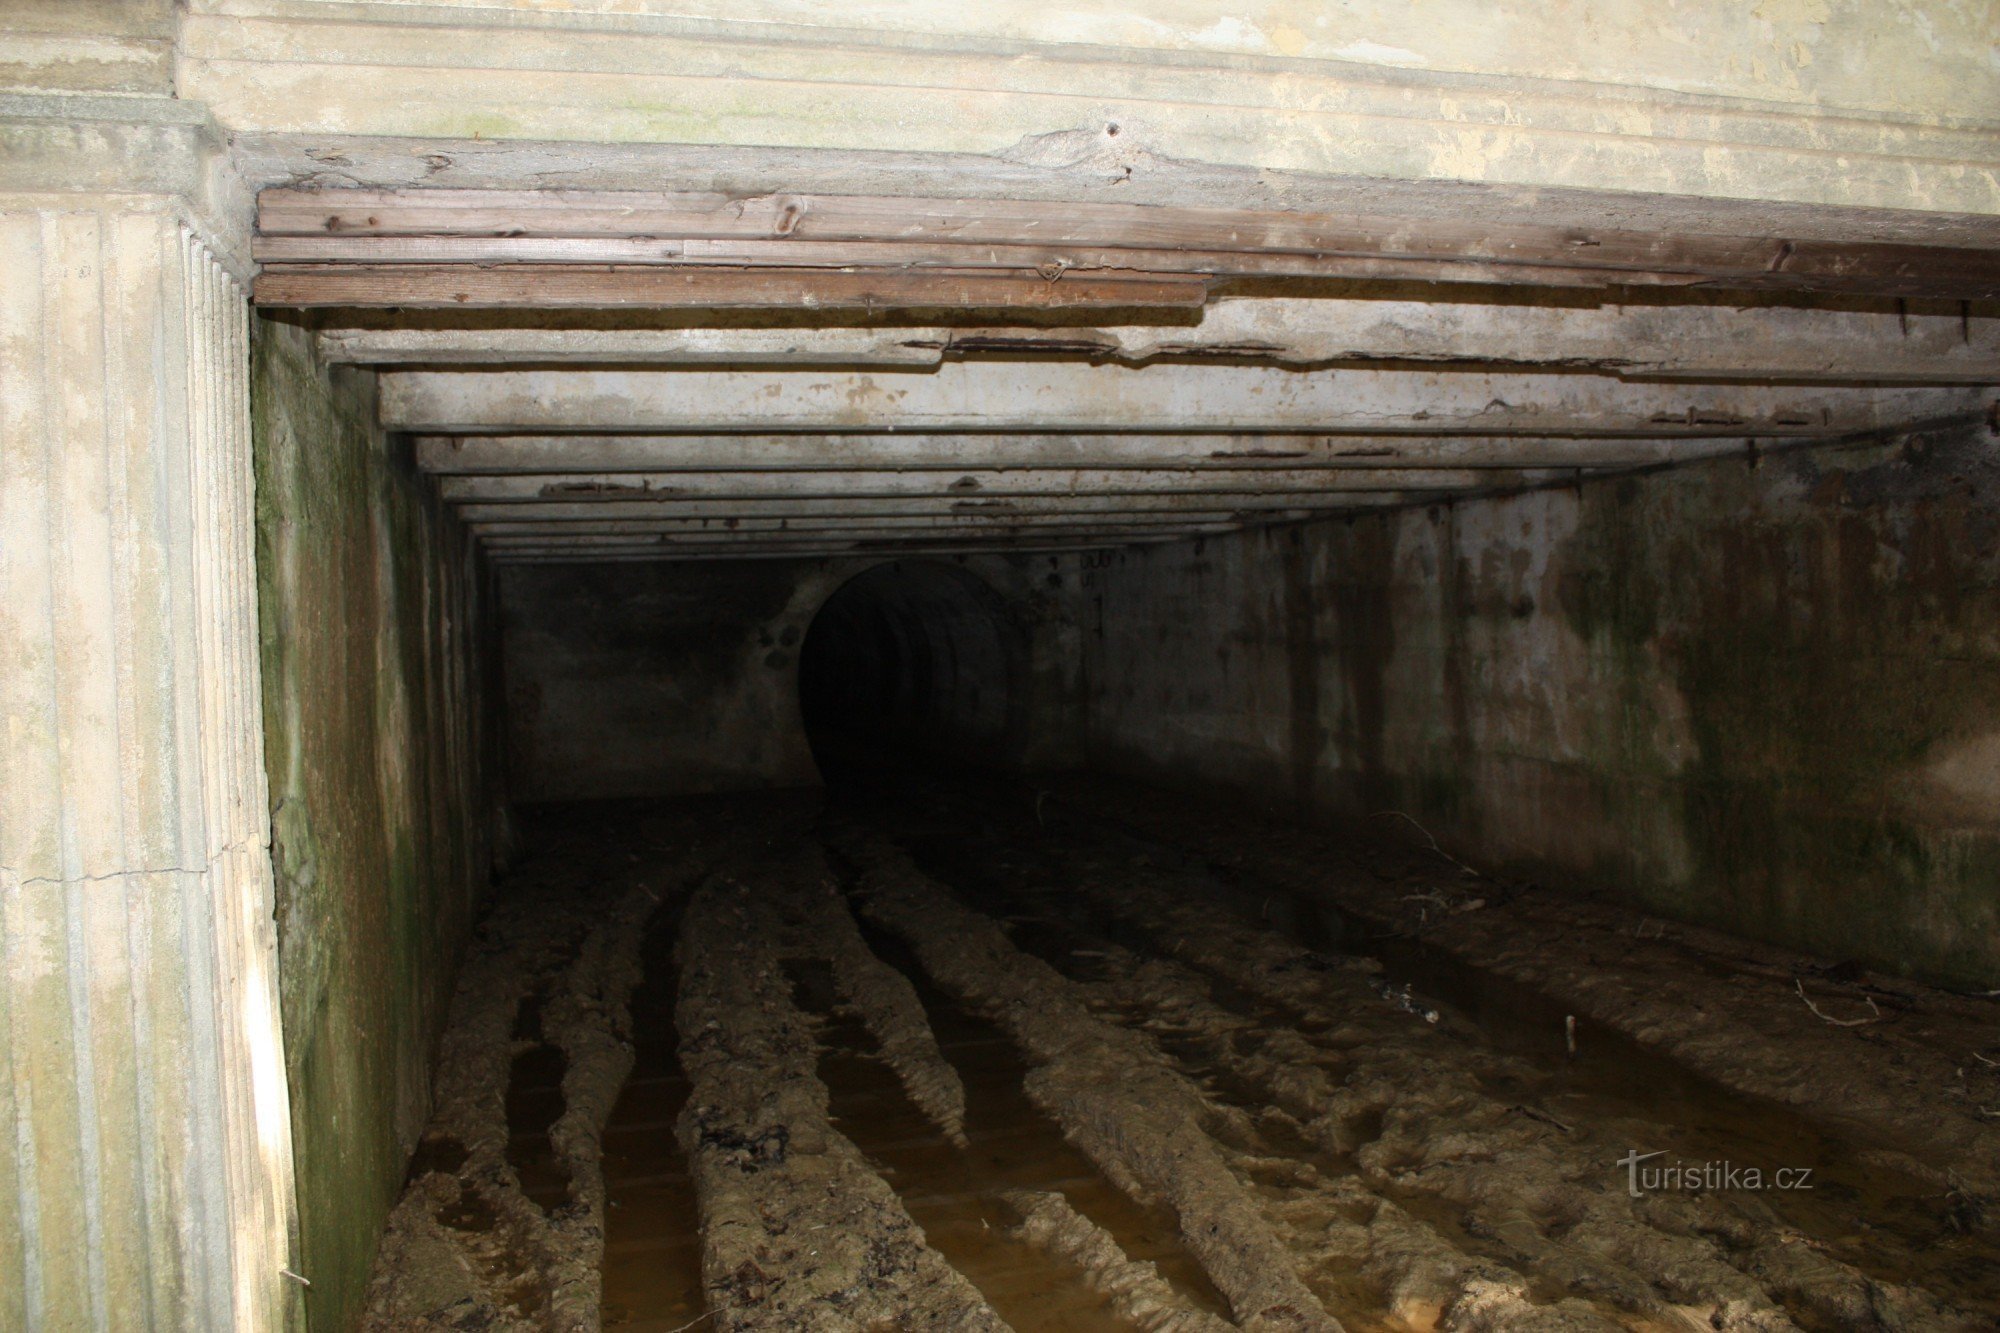 Indgangsdelen af ​​den smalsporede jernbanetunnel